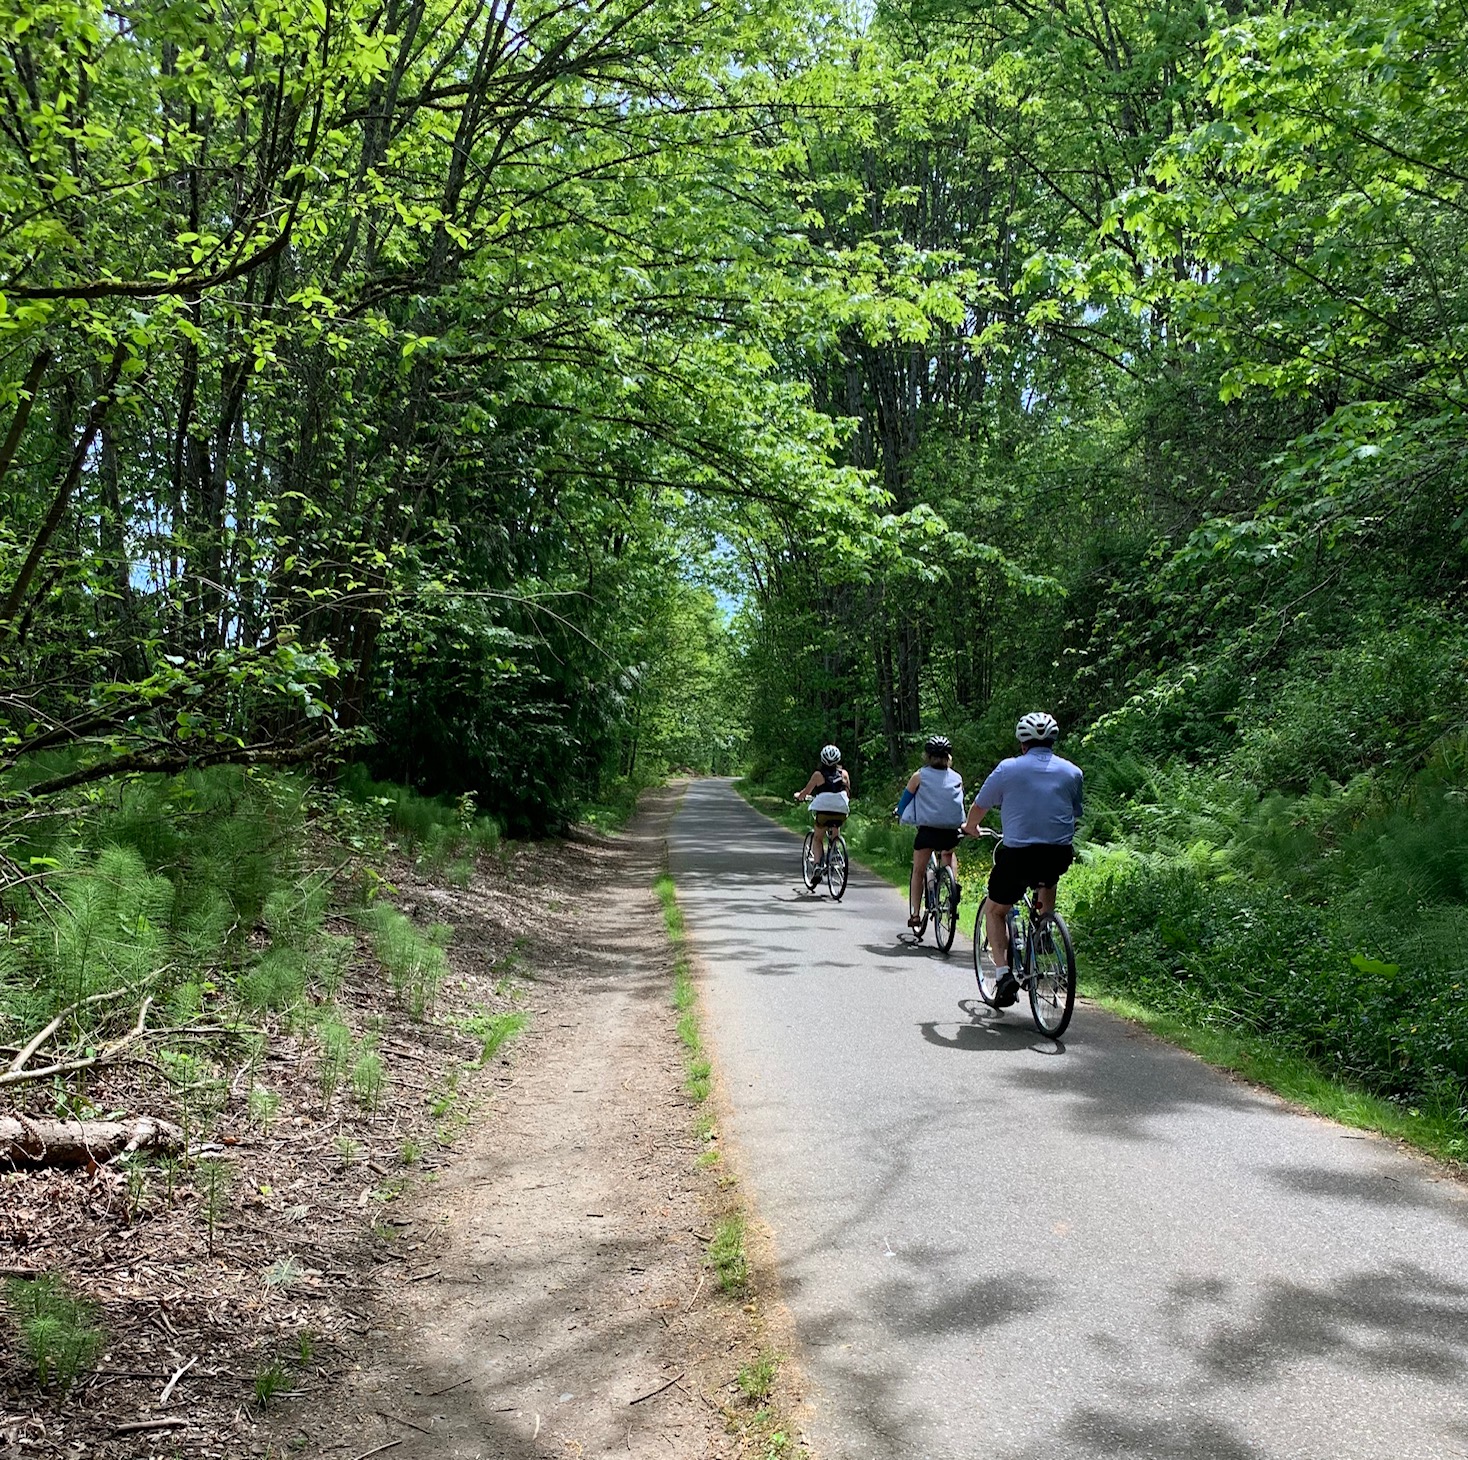 A photo of the bike tour on trail through trees.